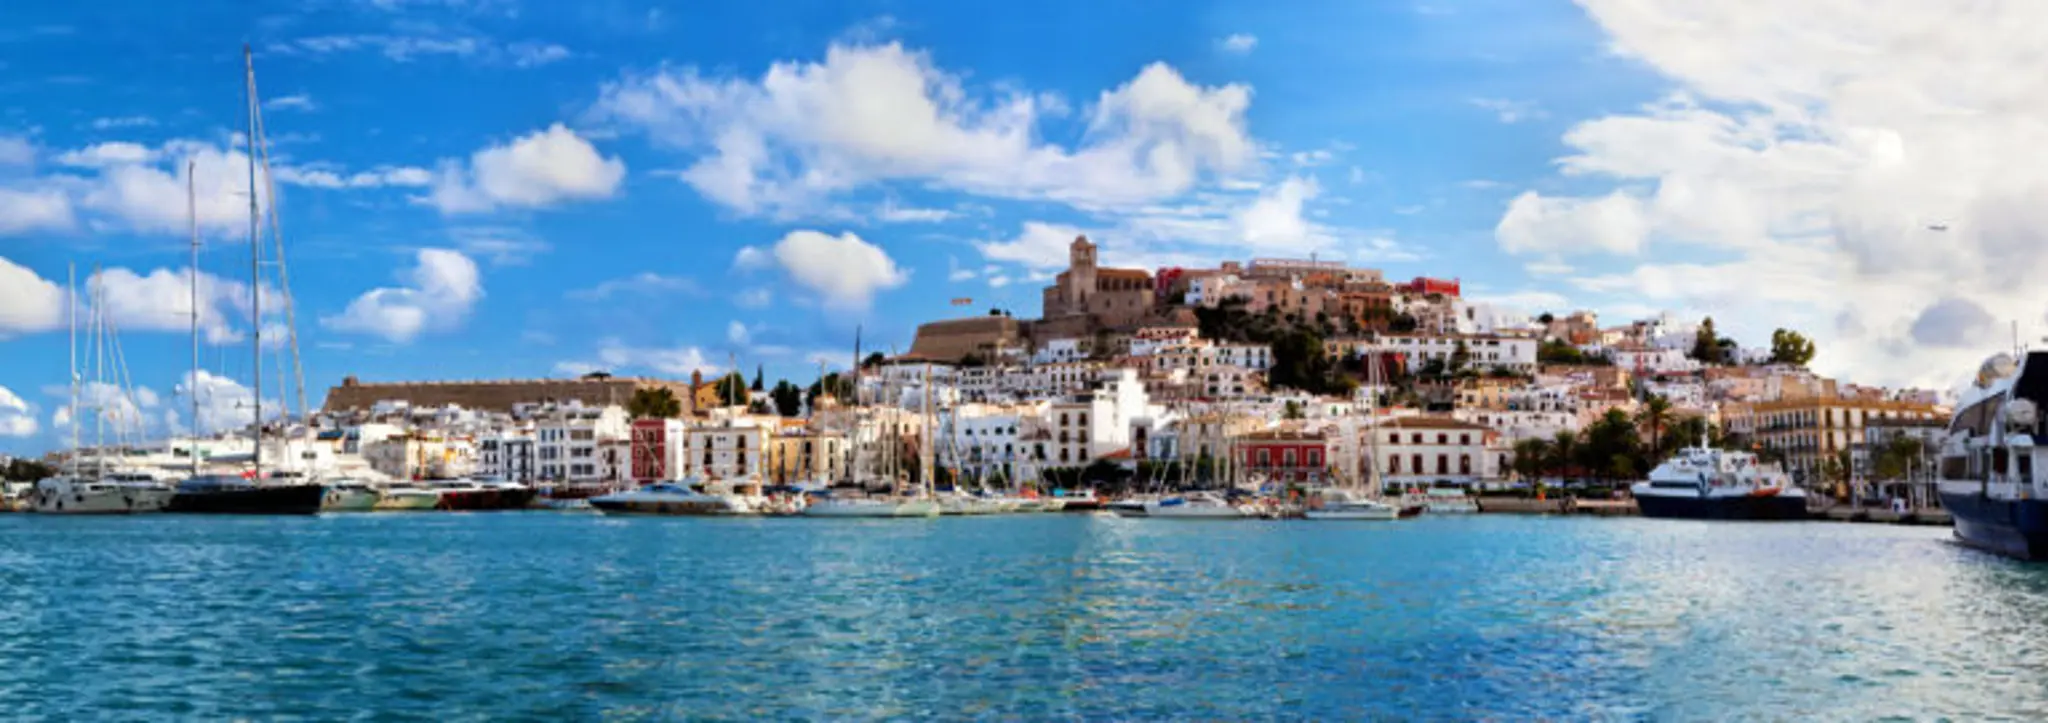 Ibiza Città Vecchia: una breve storia